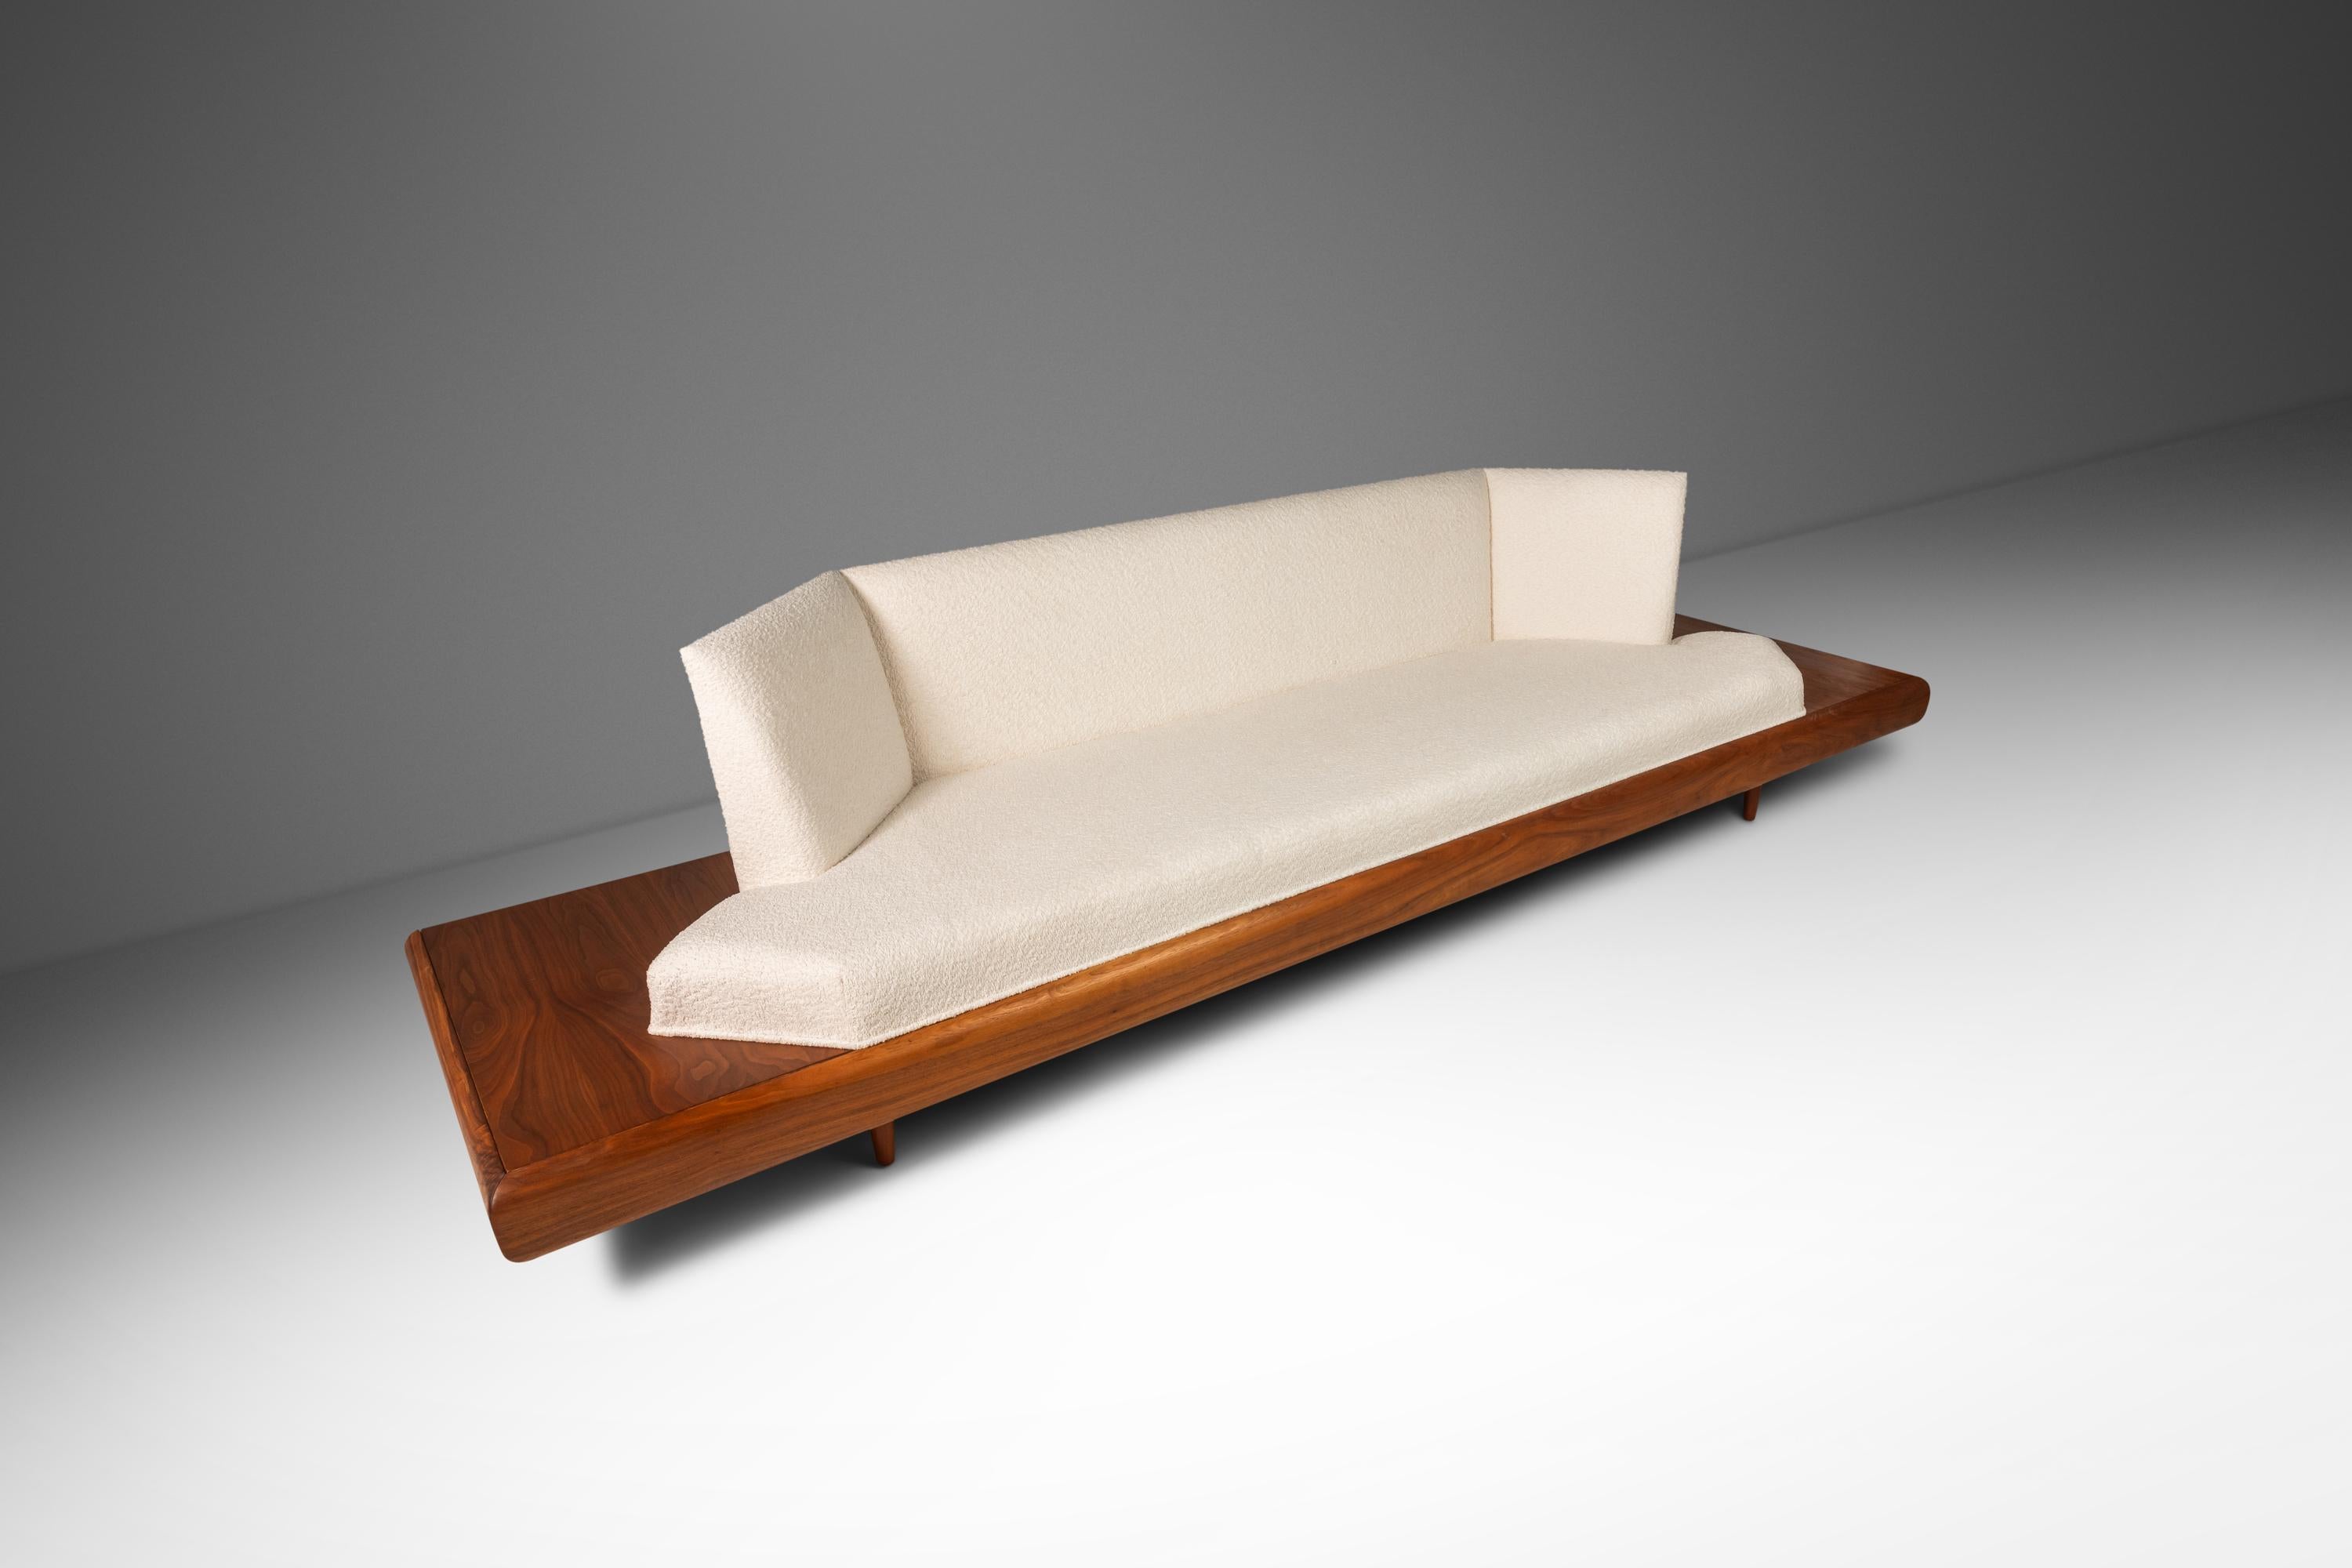 Conçu par l'incomparable Adrian Pearsall, ce modèle emblématique de canapé à plate-forme 2006-S est la quintessence de l'art fonctionnel. Audacieux par son ampleur, sa forme et les matériaux utilisés, ce canapé est un véritable chef-d'œuvre